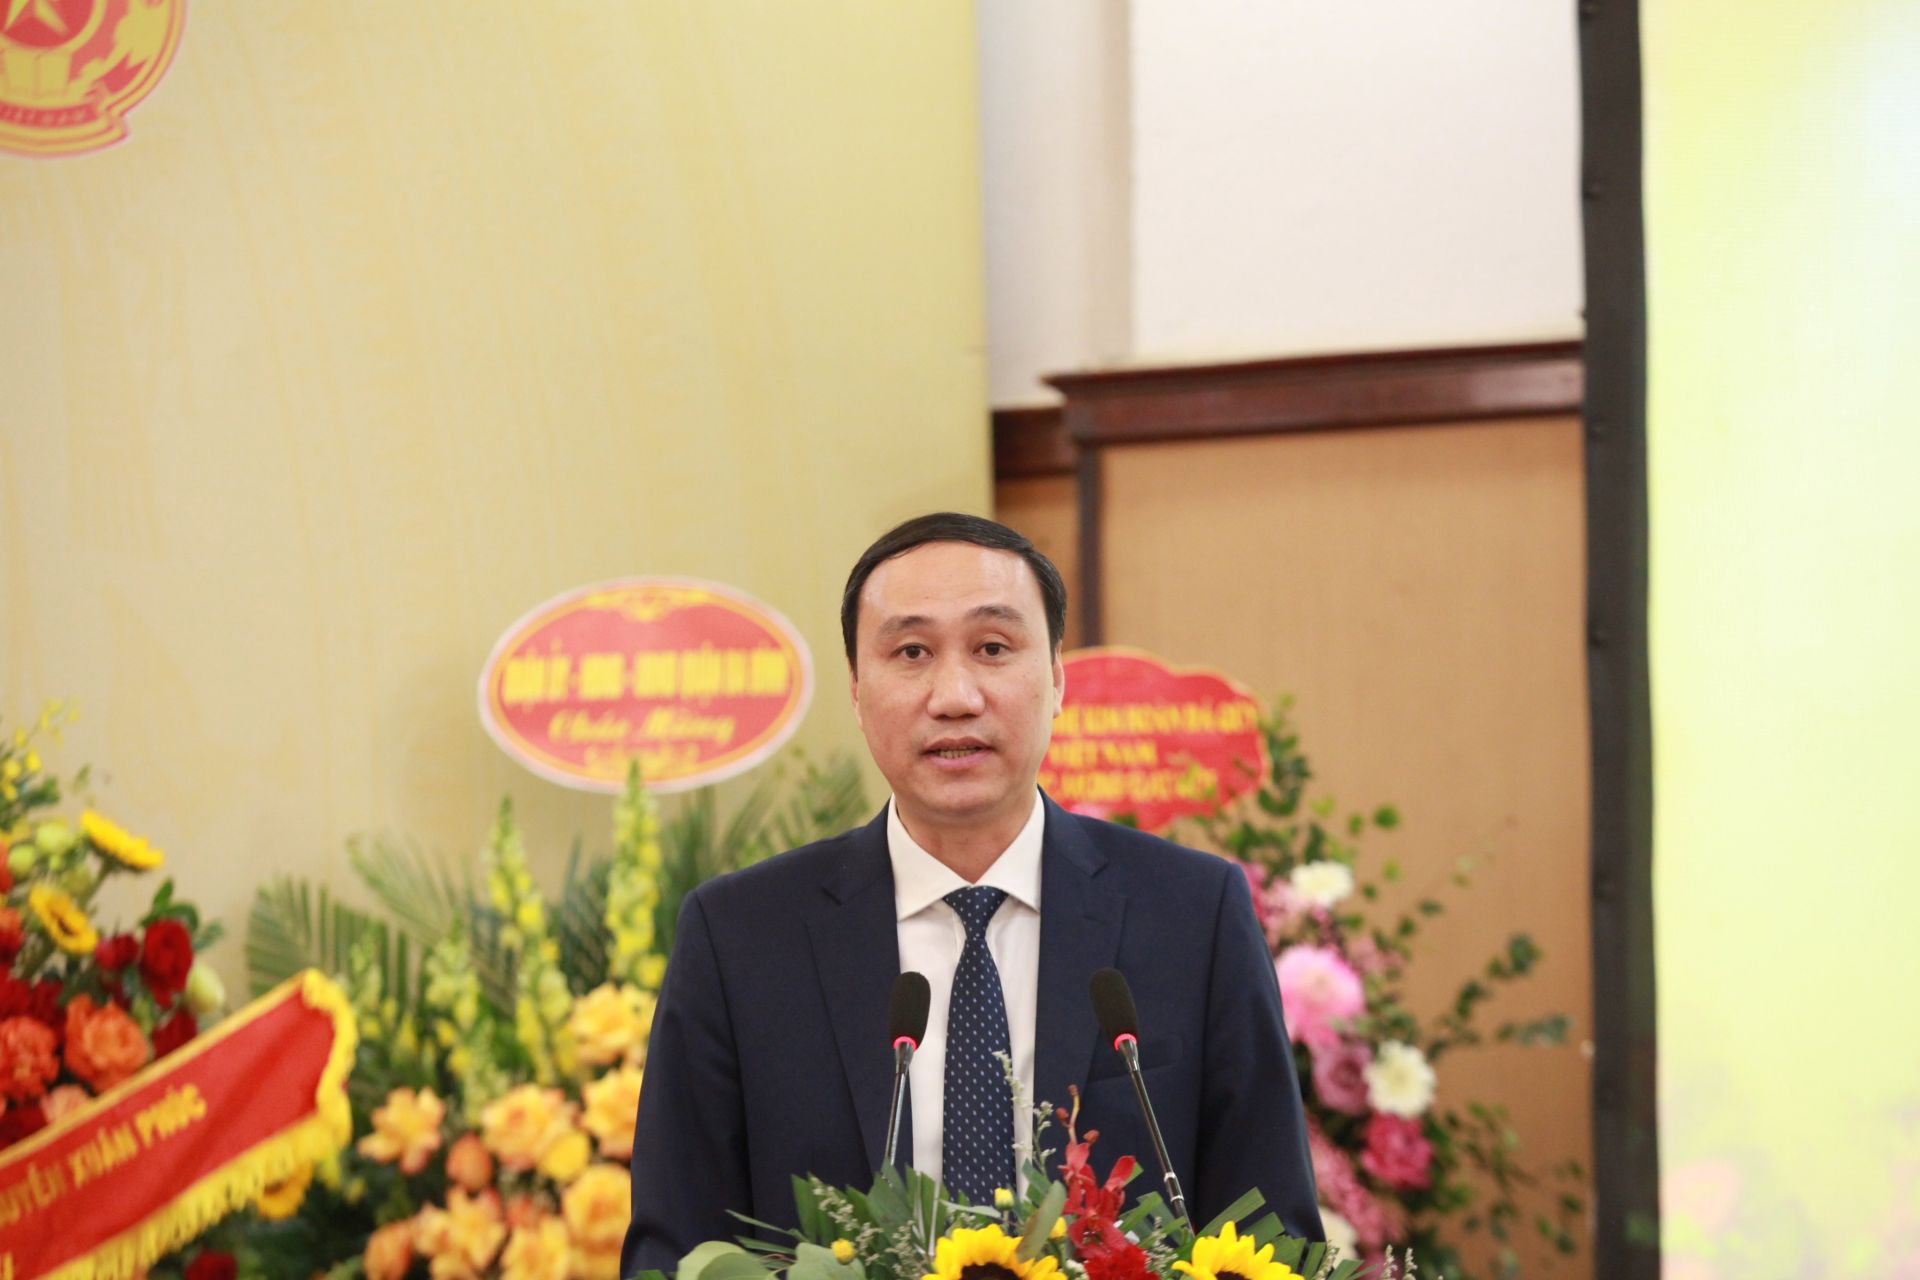 Phó Chủ tịch Ủy ban Mặt trận Tổ quốc Việt Nam Phùng Khánh Tài bày tỏ ghi nhận và chúc mừng Hiệp hội.